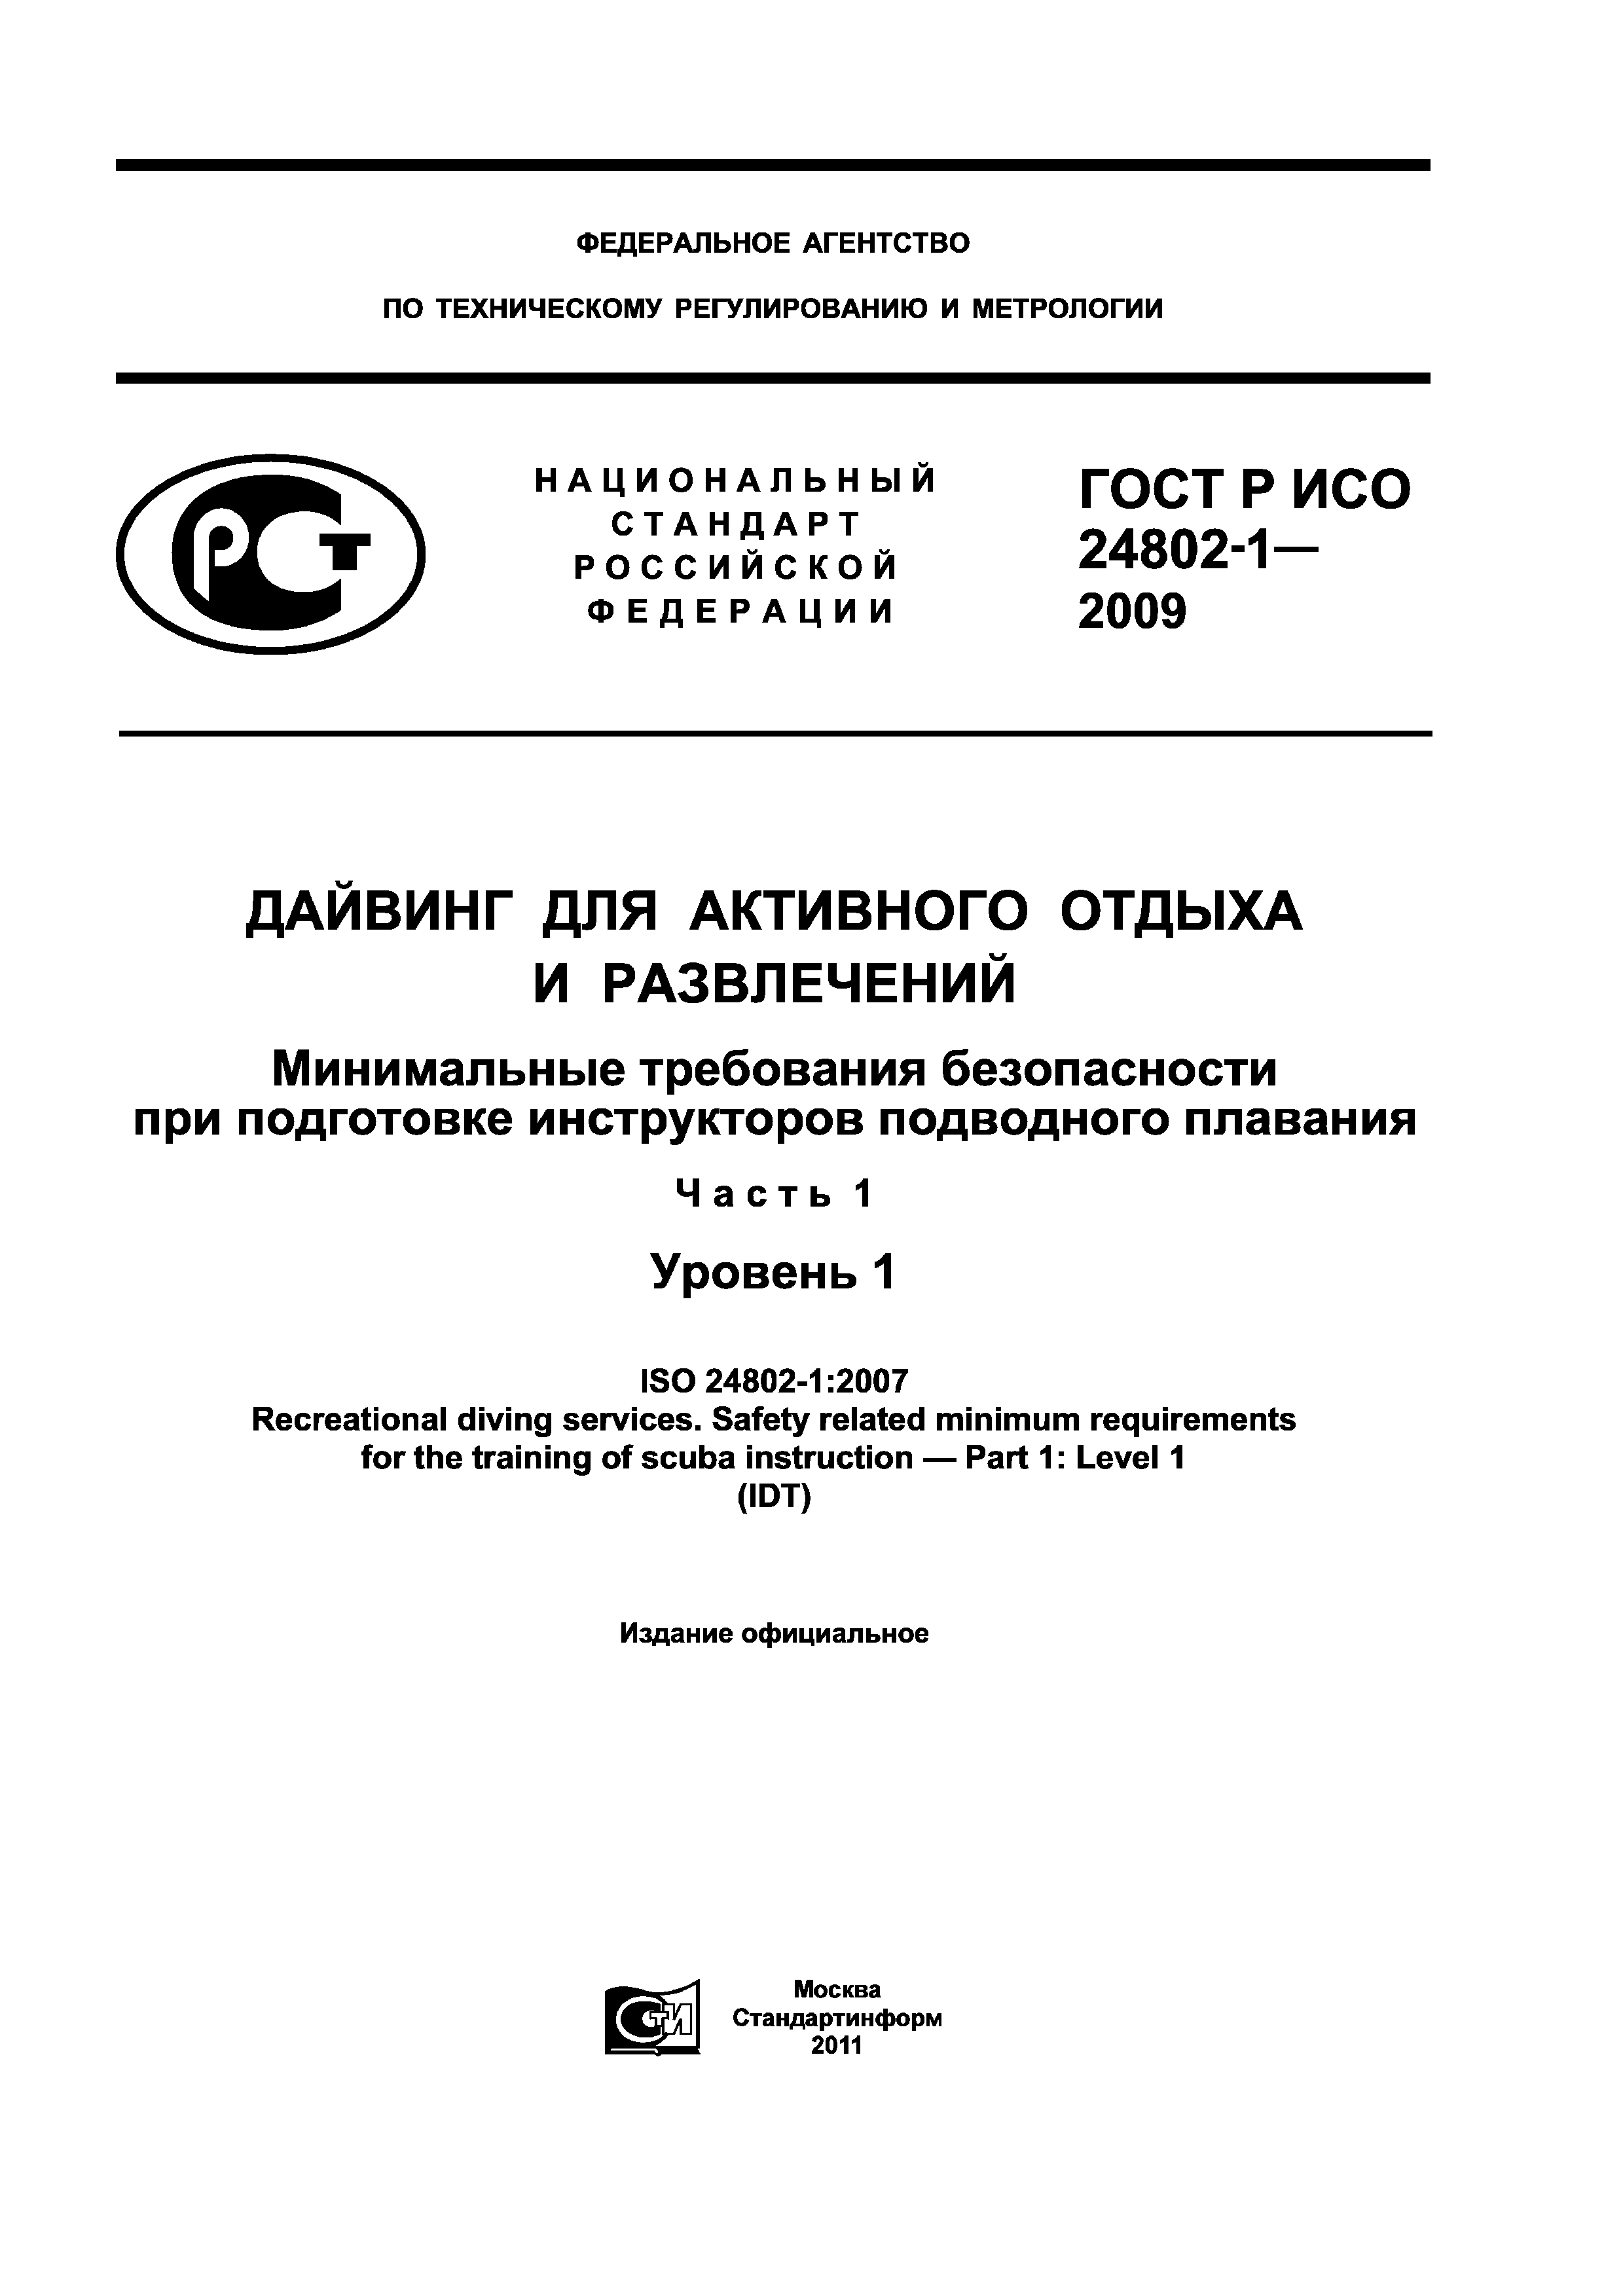 ГОСТ Р ИСО 24802-1-2009